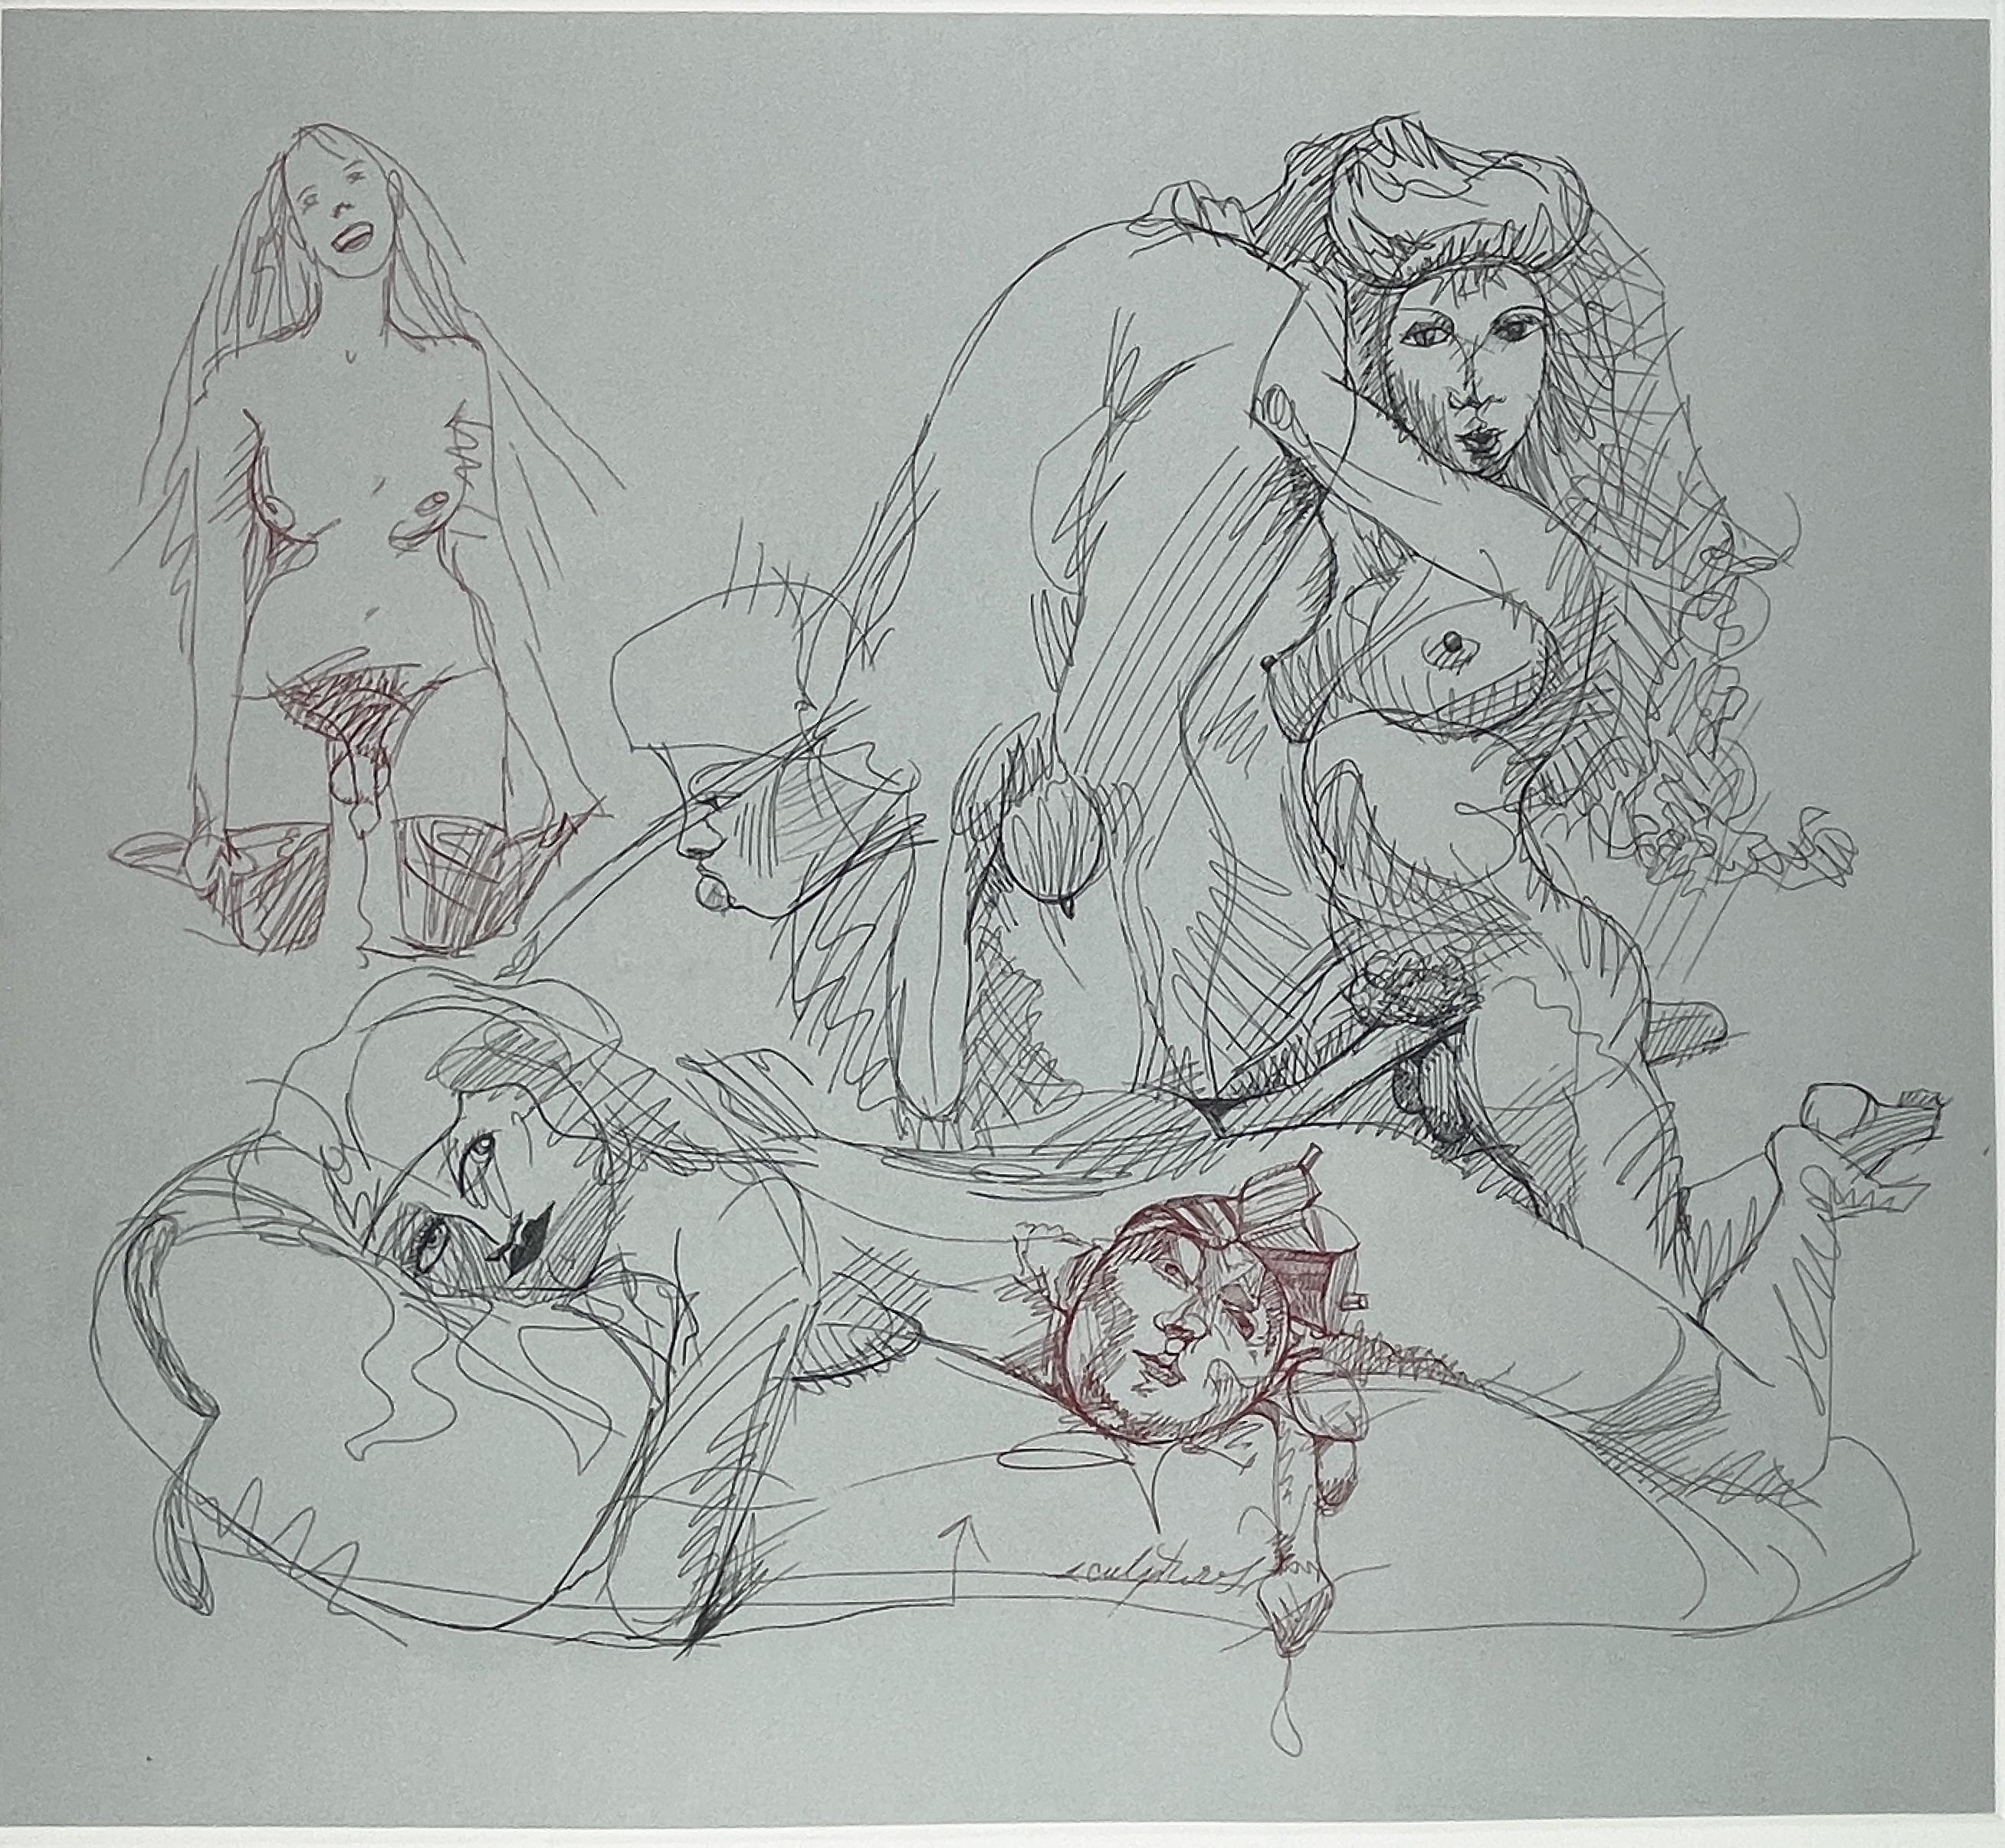 Cette scène sensuelle et ludique est caractéristique de l'œuvre d'Oldenburg : un véritable amoncellement de femmes affichant diverses expressions de joie et de coquetterie. Les esquisses ont été dessinées directement sur la plaque par l'artiste, un